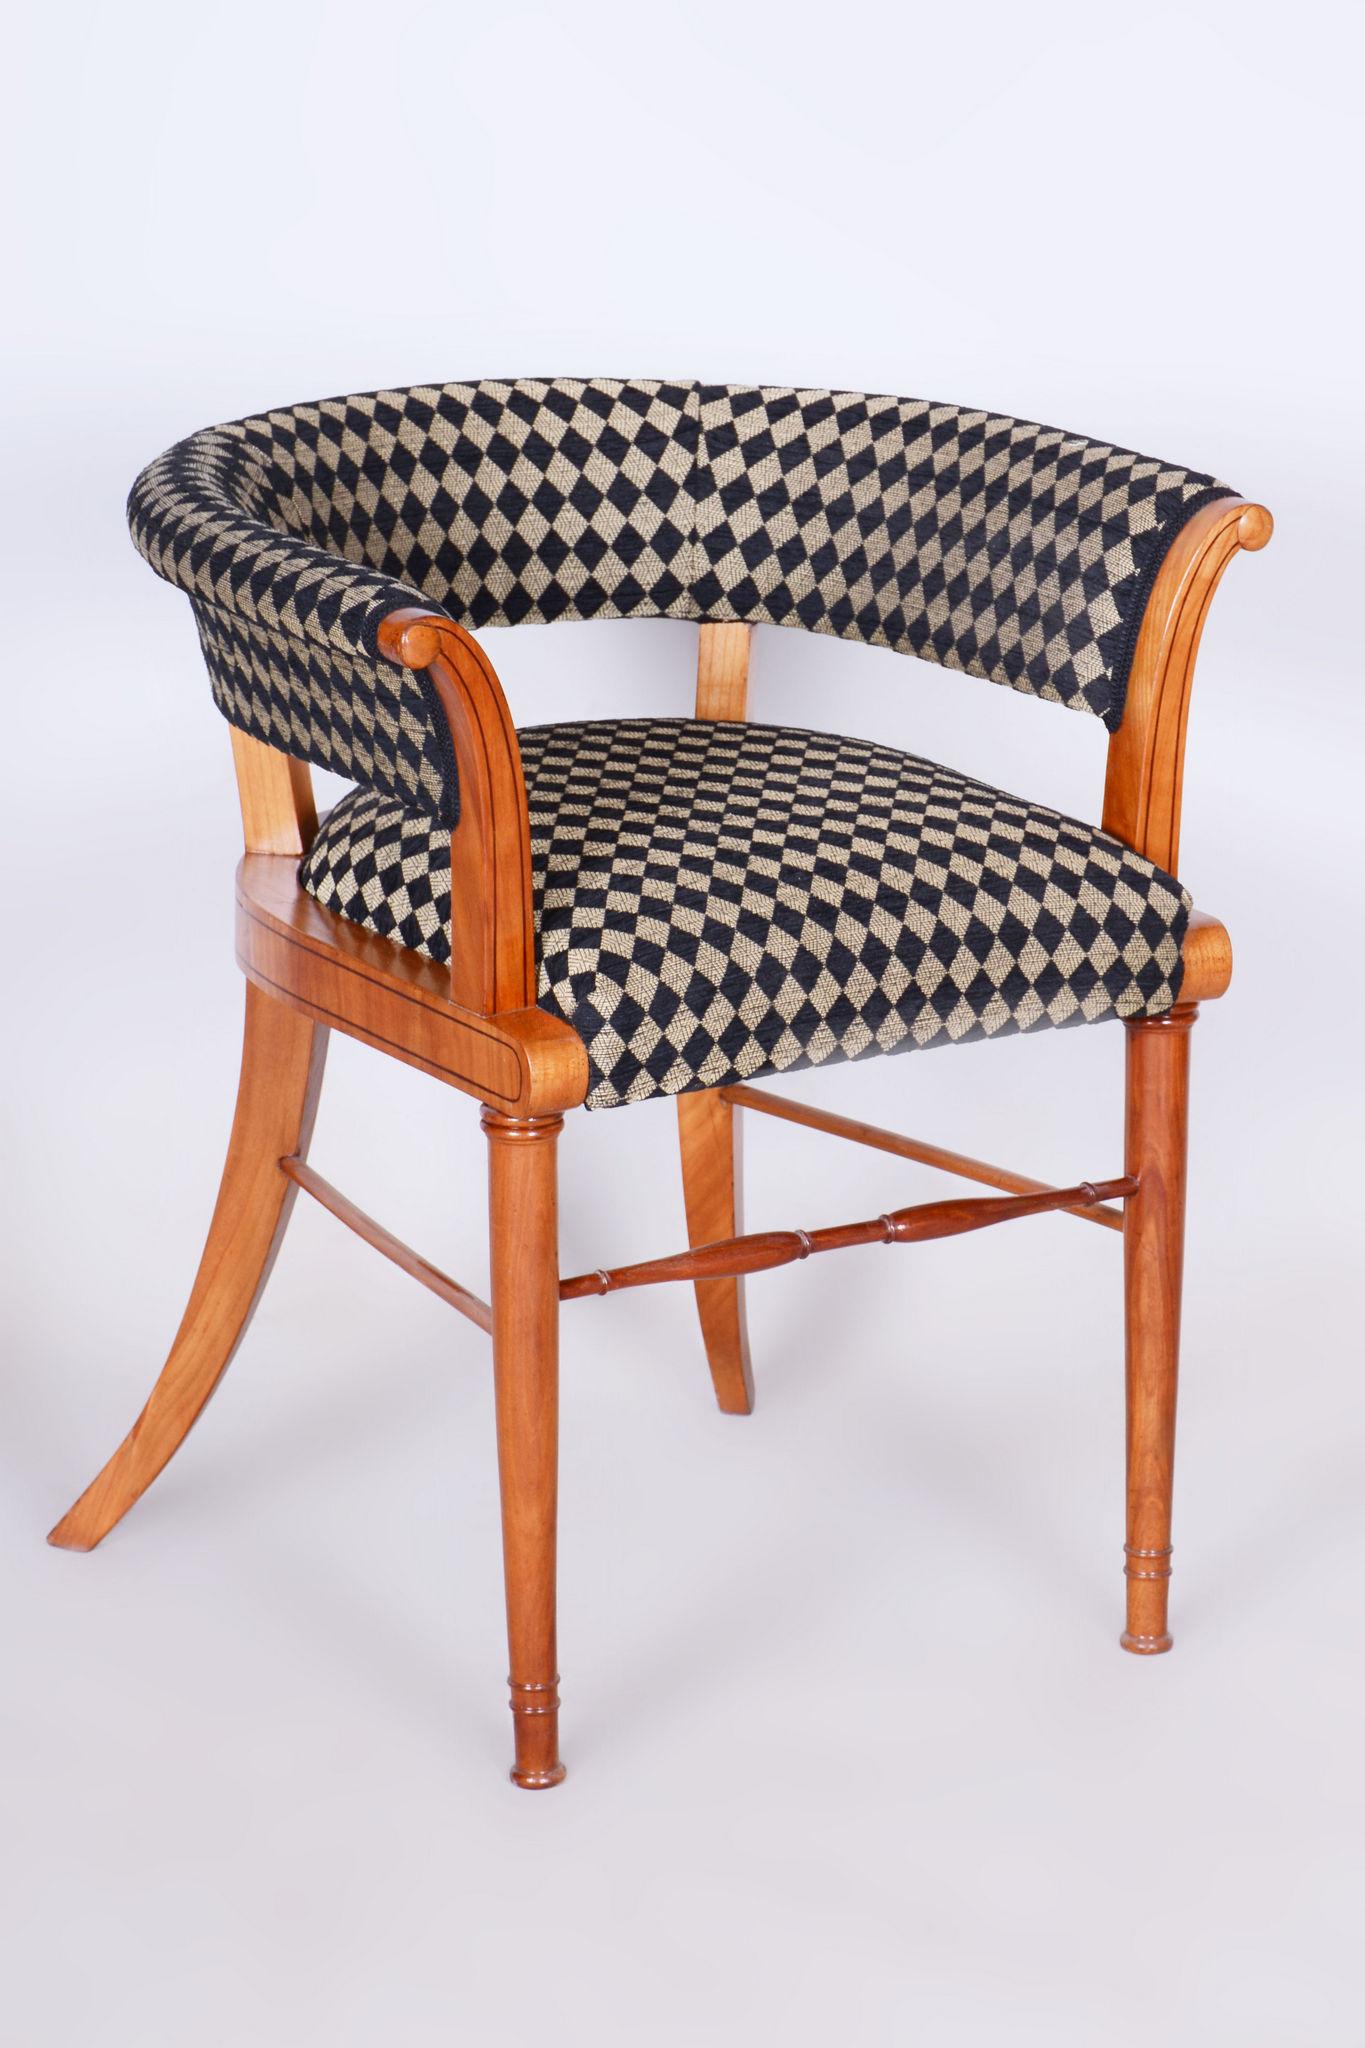 Restaurierter Biedermeier-Sessel aus Nussbaumholz, der Josef Danhauser zugeschrieben wird.

Unser professionelles Aufarbeitungsteam in Tschechien hat das Stück nach dem Originalverfahren restauriert und neu gepolstert. 

Es wurde von unserem